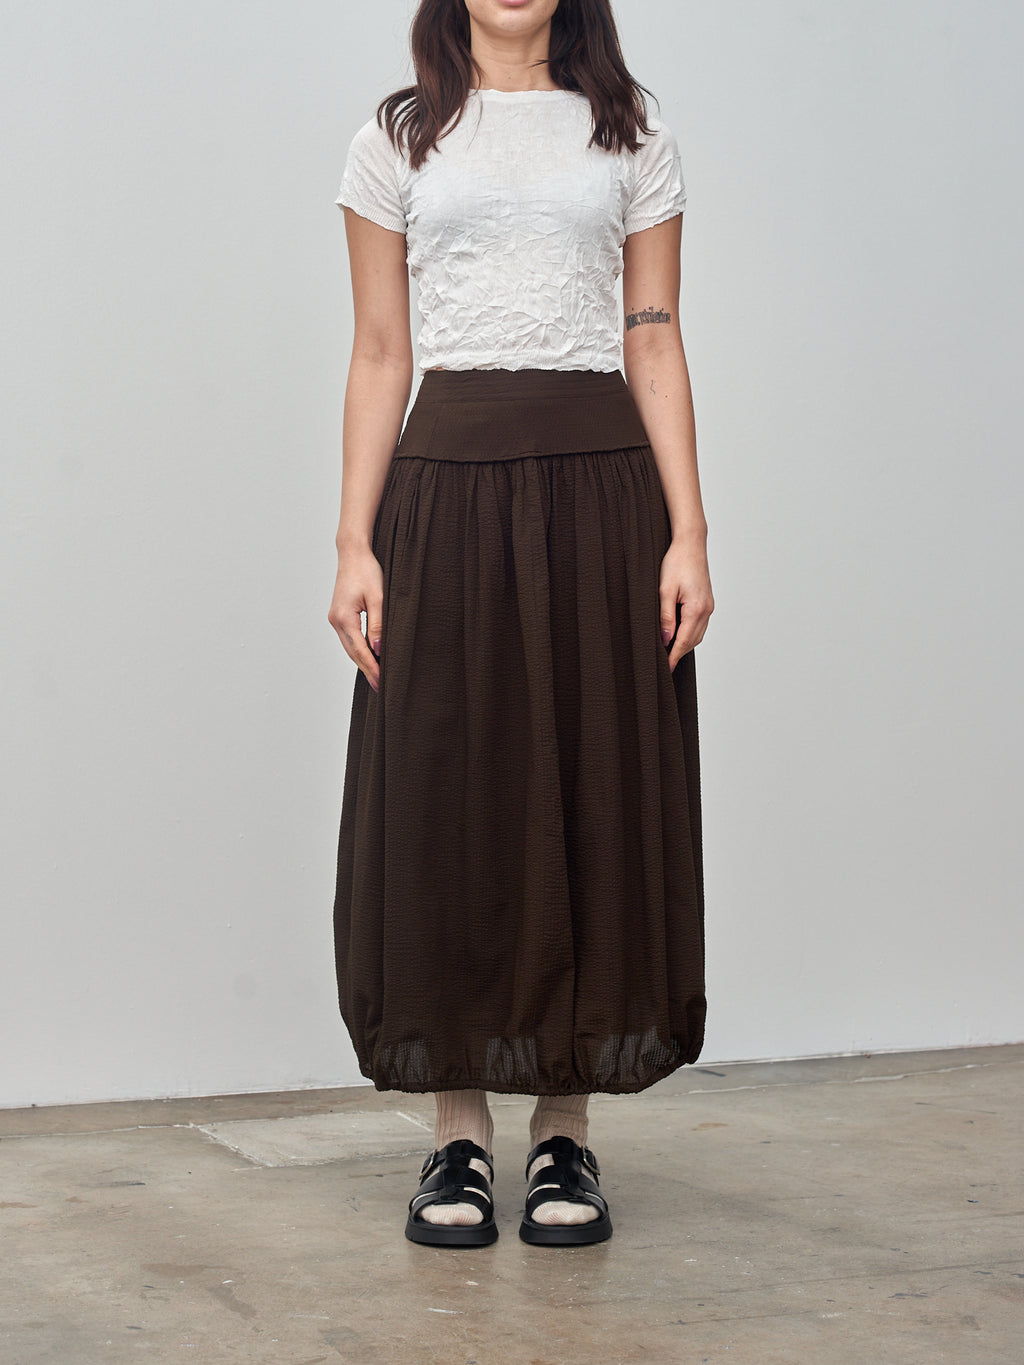 Namu Shop - Sayaka Davis Crinkled Petite Knit Tee - White